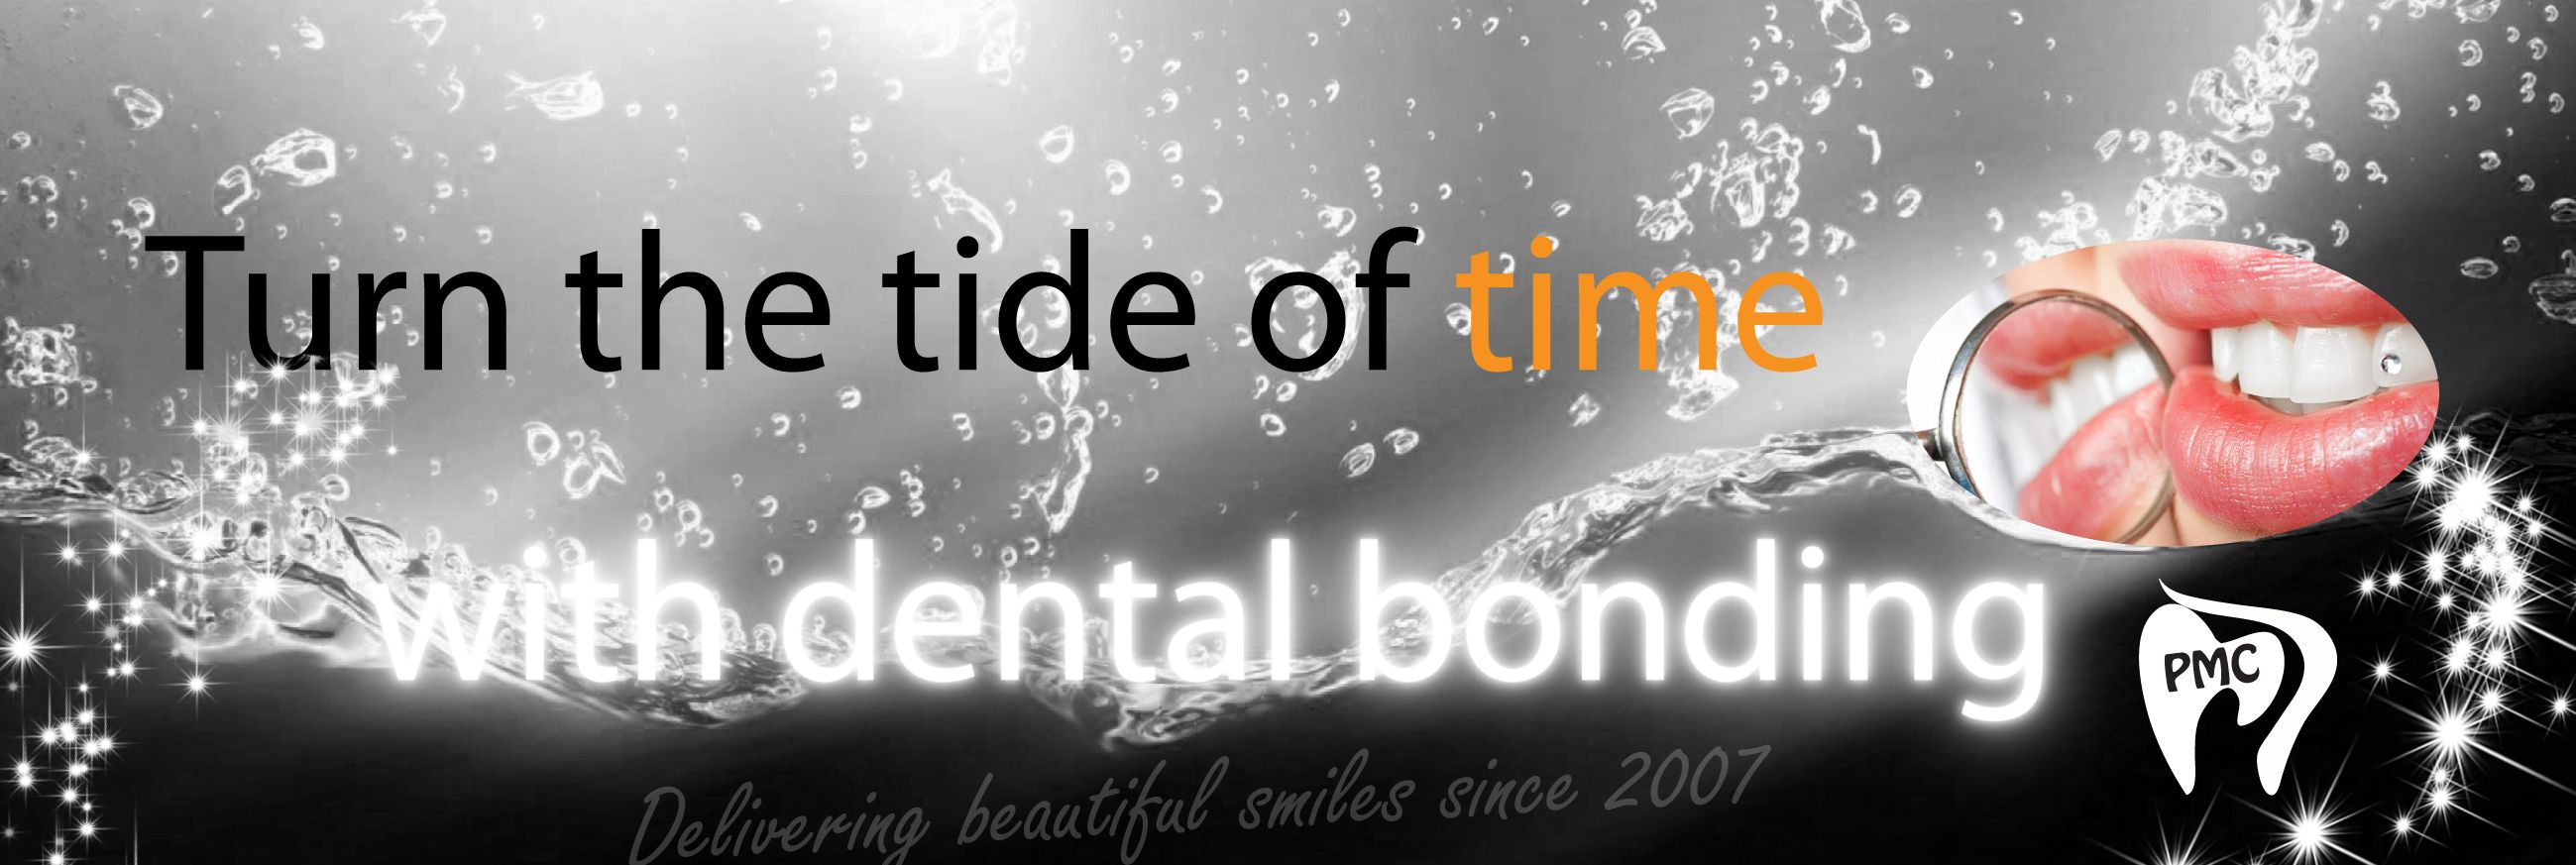 Dental bonding image